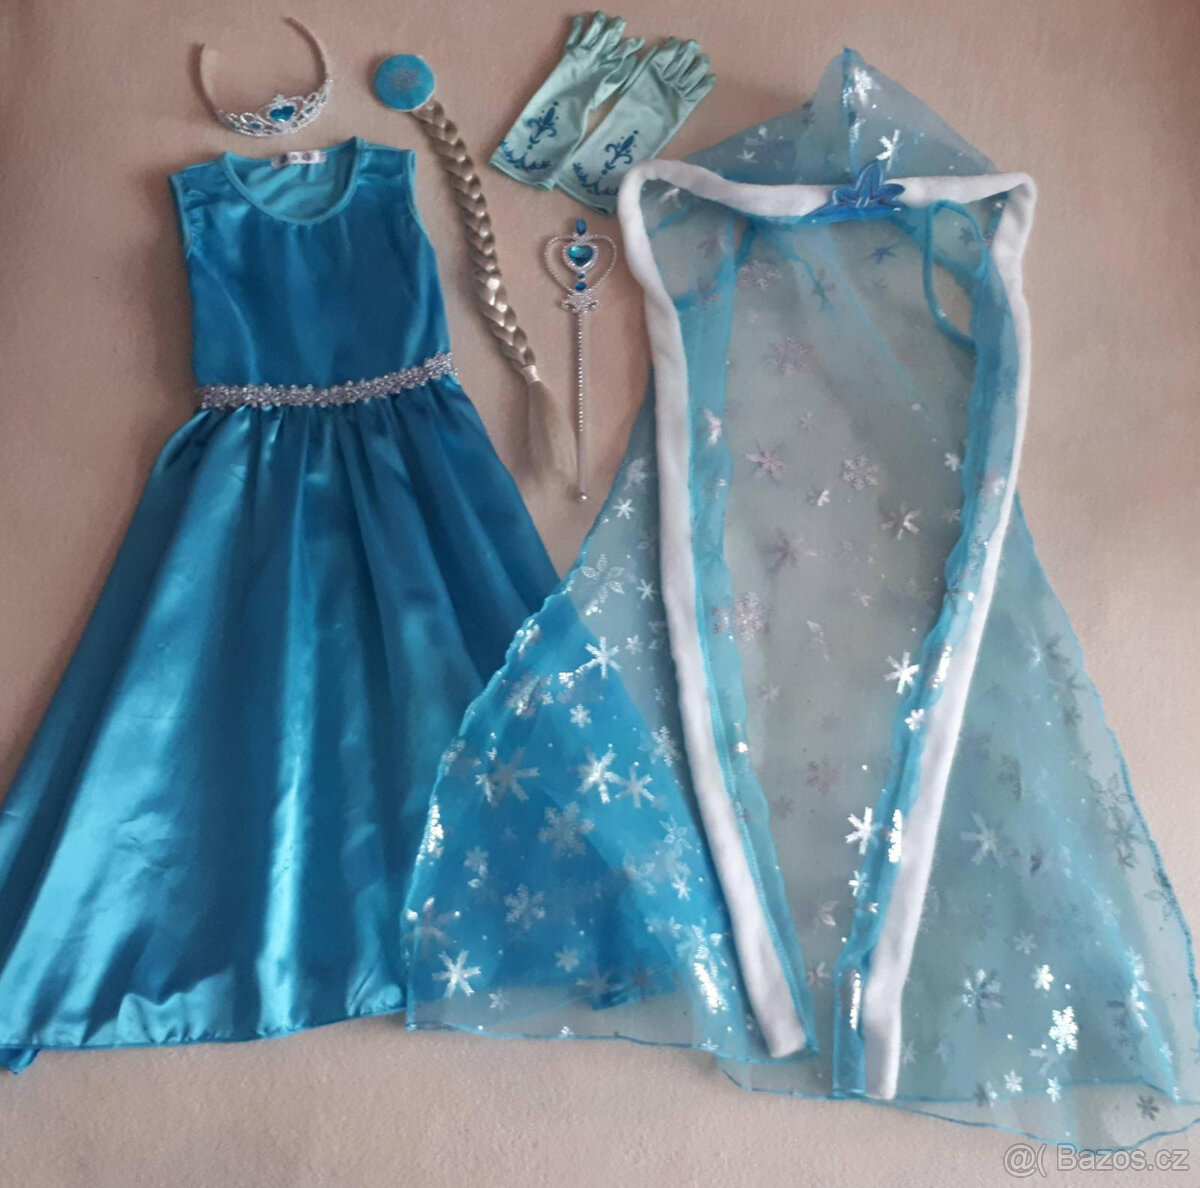 Frozen-Ledové království, Elsa-kostým (šaty,plášť) a doplňky